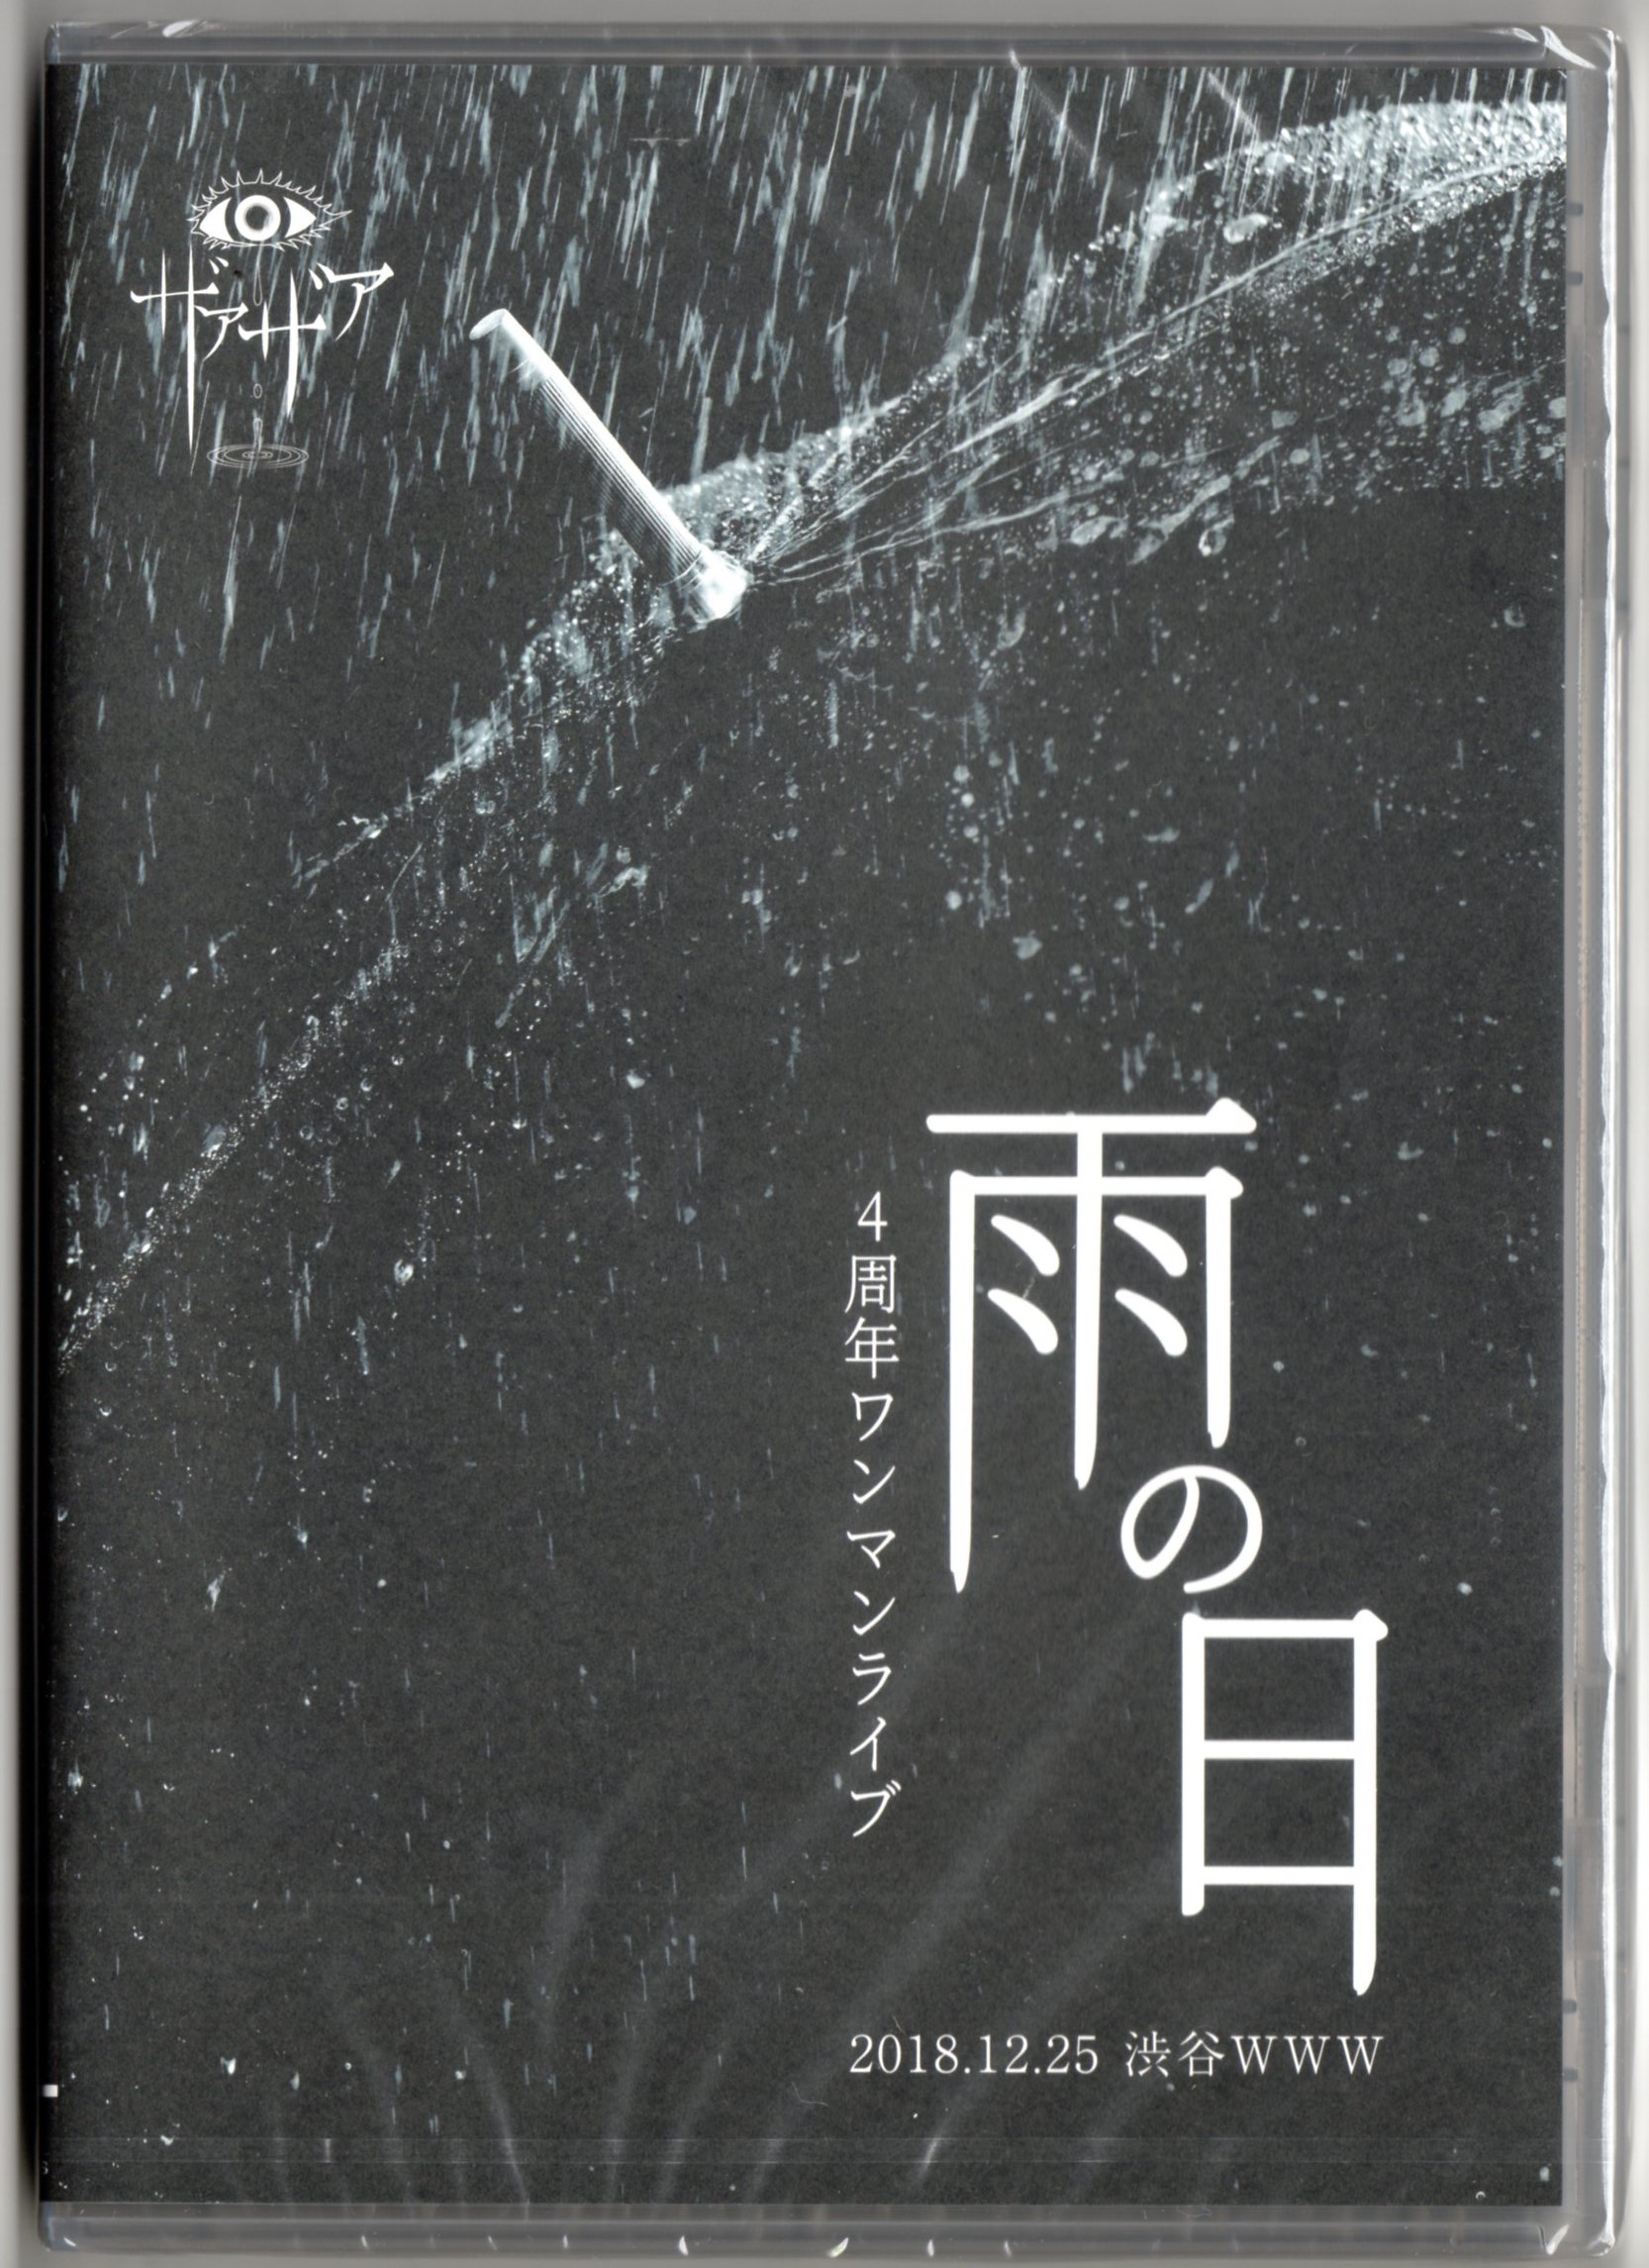 ザアザア の DVD 4周年ワンマンライブ「雨の日」 2018.12.25渋谷WWW